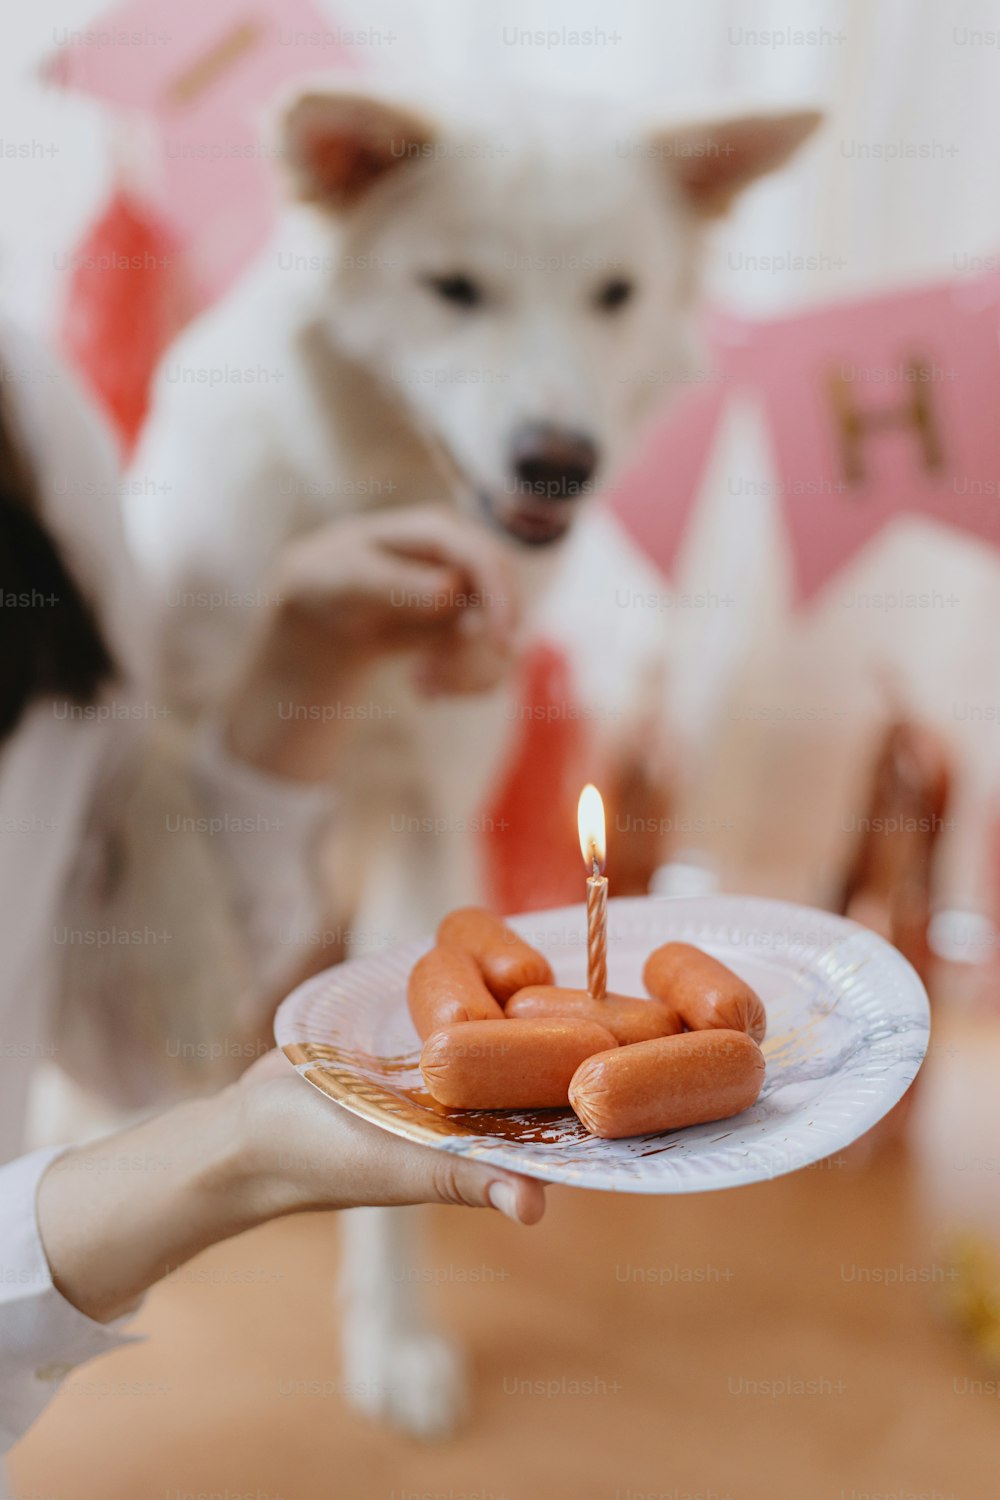 Hundegeburtstag. Glückliche junge Frau und hungriger Hund, der Geburtstag mit Wurstkuchen und Kerze auf dem Hintergrund der rosa Girlande feiert. Entzückender weißer Schweizer Schäferhund erster Geburtstag